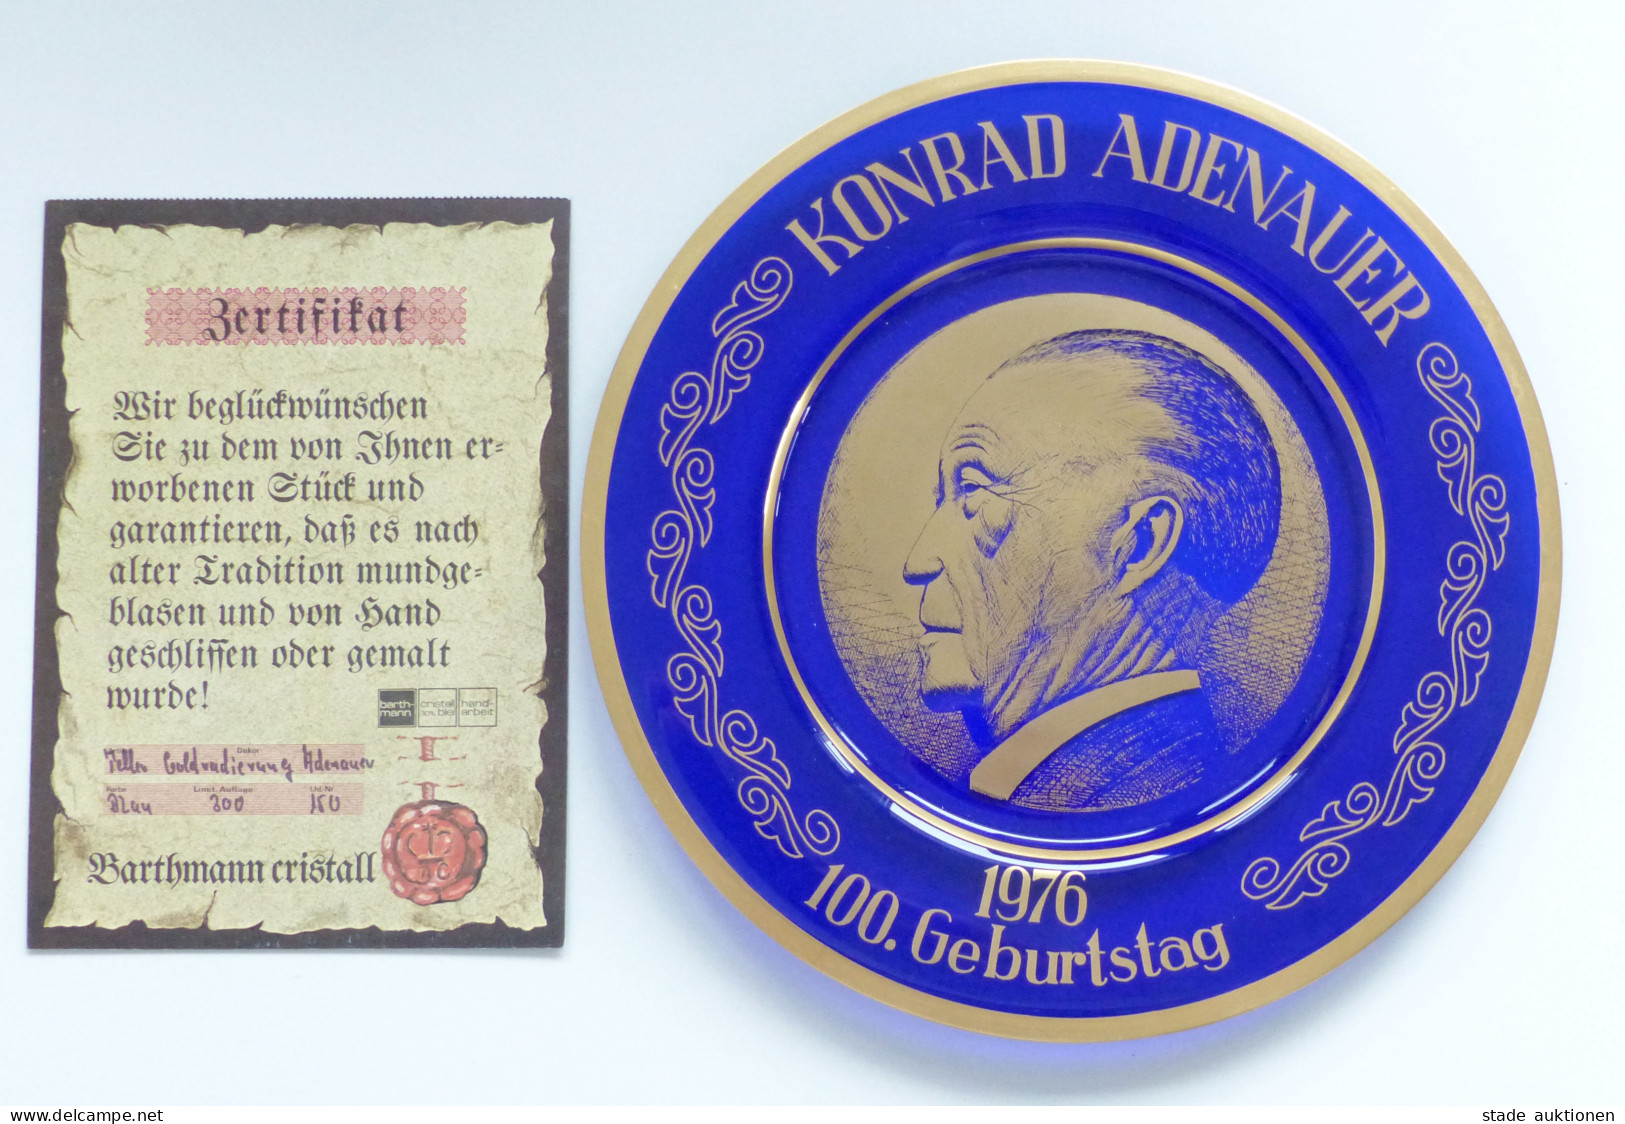 Politik Gedenkteller Zum 100. Geburtstag Von Adenauer, Konrad 1976, Mit Zertifikat In Limit. Auflage Von Nur 300 Stk., B - Non Classés